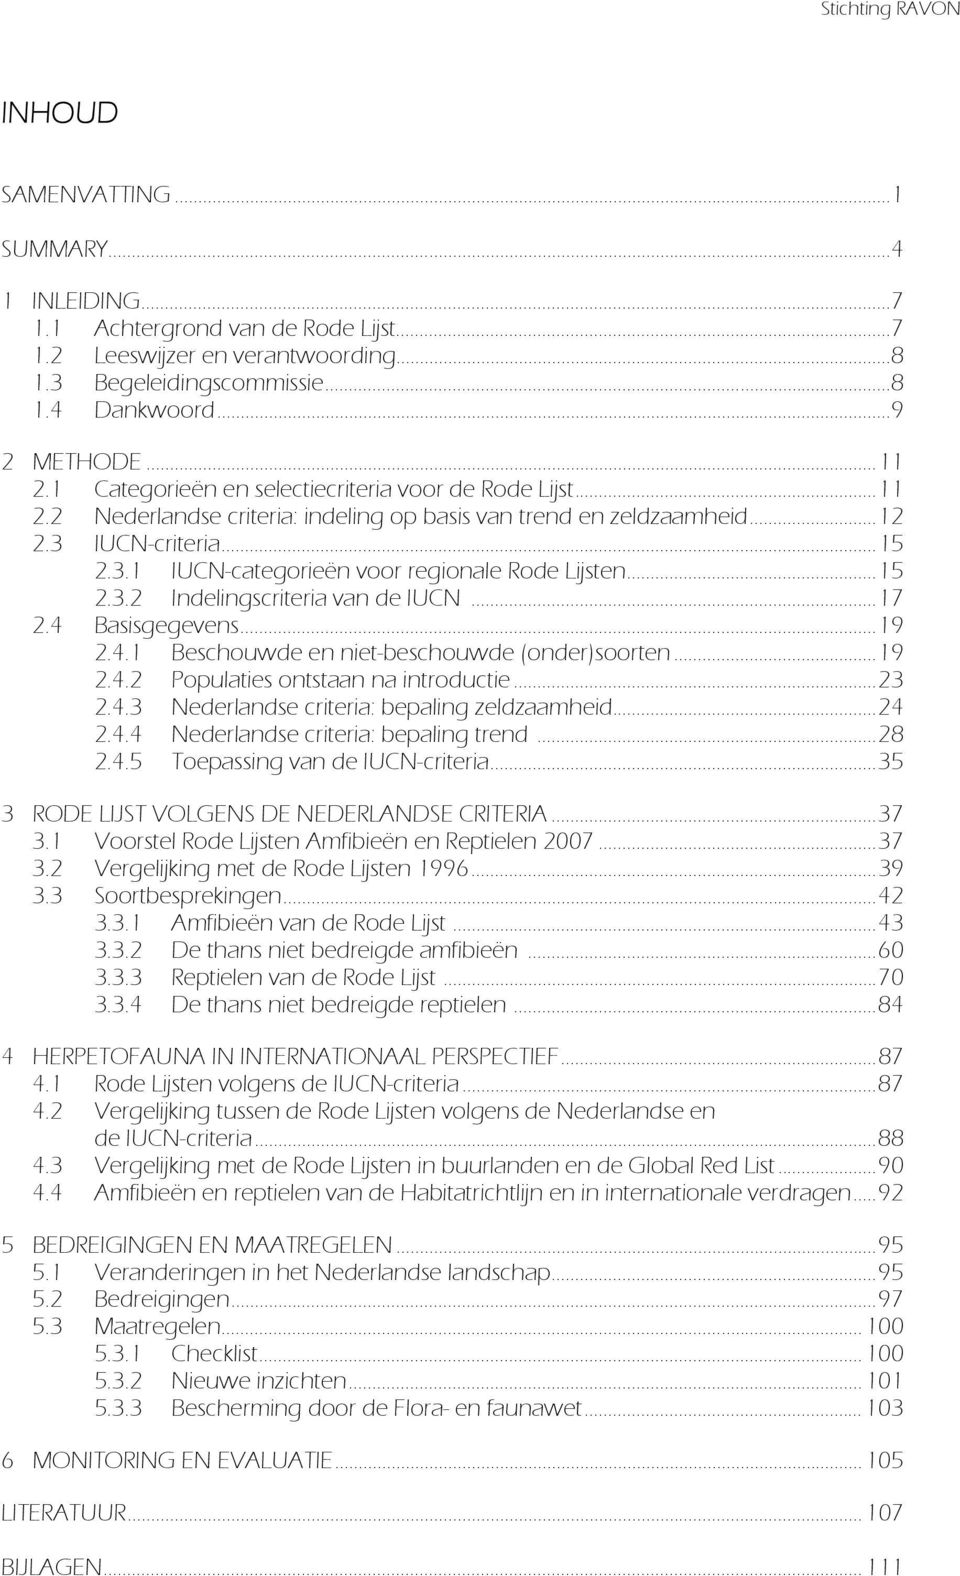 ..15 2.3.2 Indelingscriteria van de IUCN...17 2.4 Basisgegevens...19 2.4.1 Beschouwde en niet-beschouwde (onder)soorten...19 2.4.2 Populaties ontstaan na introductie...23 2.4.3 Nederlandse criteria: bepaling zeldzaamheid.